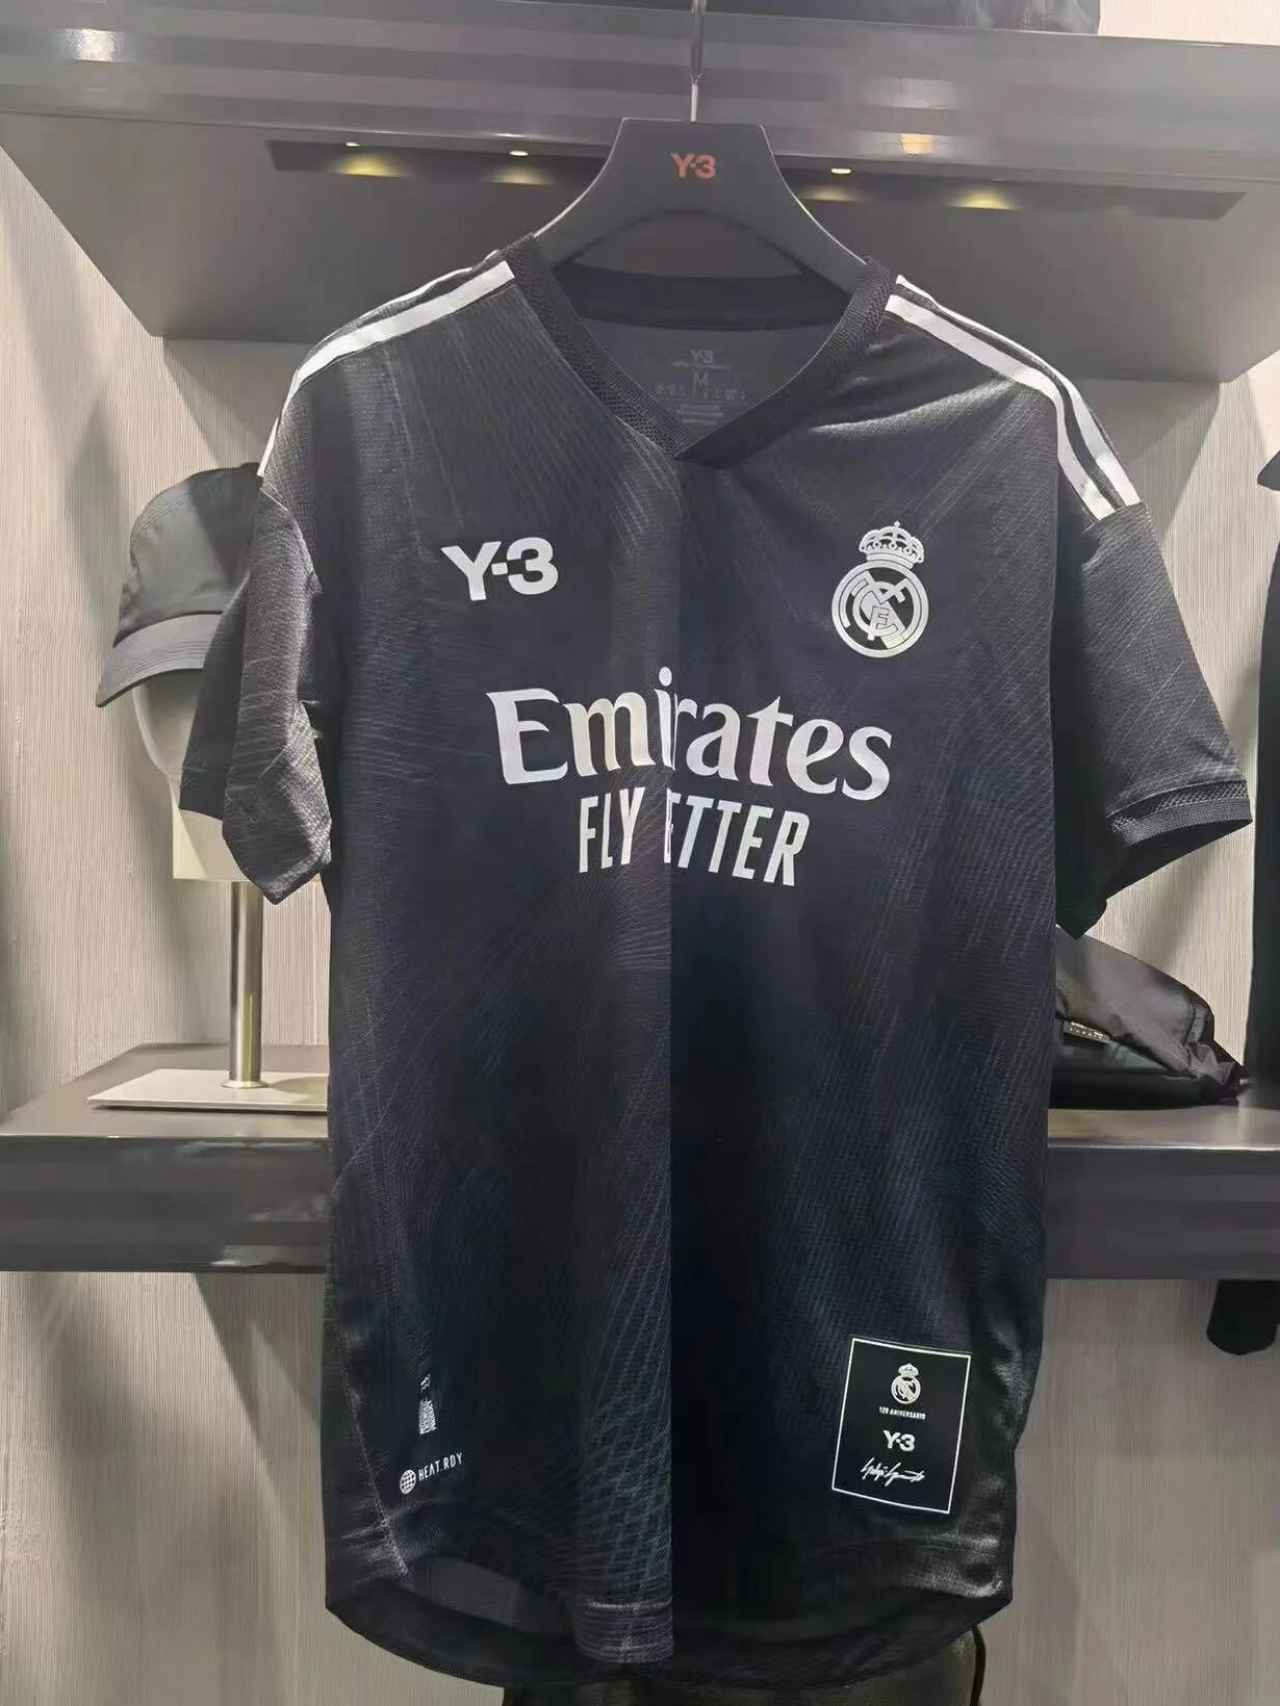 El Real Madrid El de se presenta la nueva equipación con un diseño